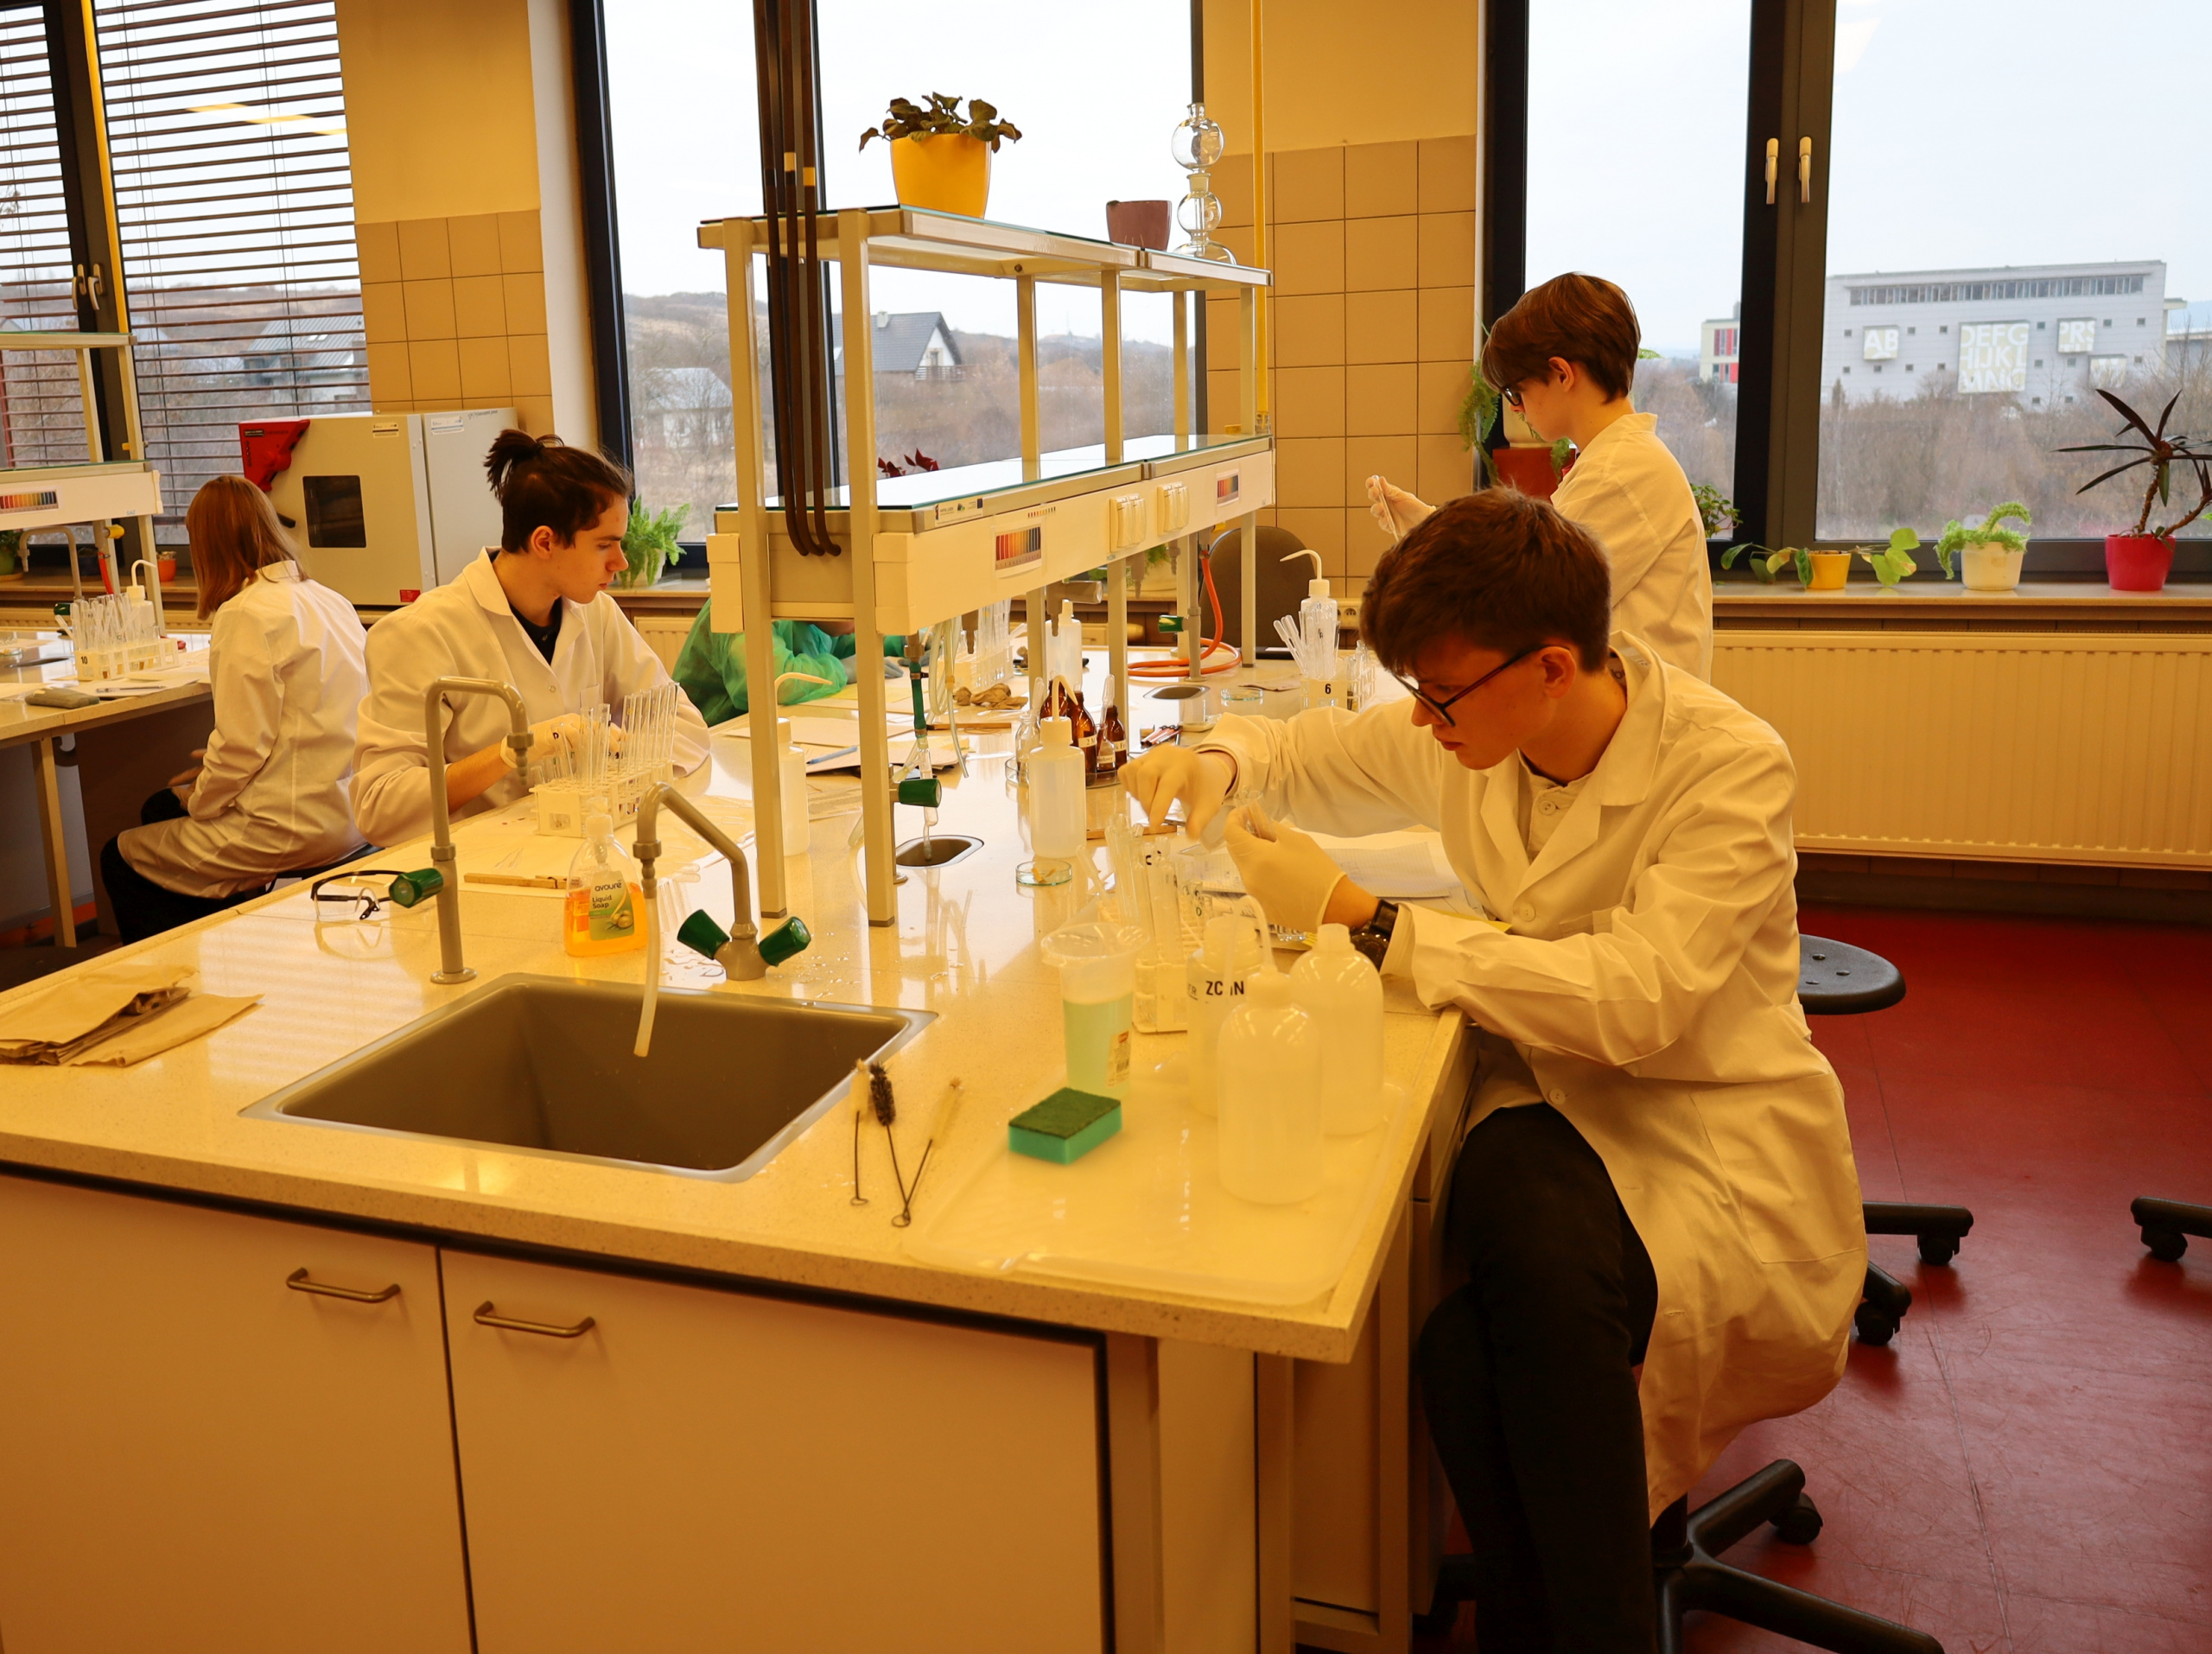 Uczestnicy olimpiady chemicznej w laboratorium.